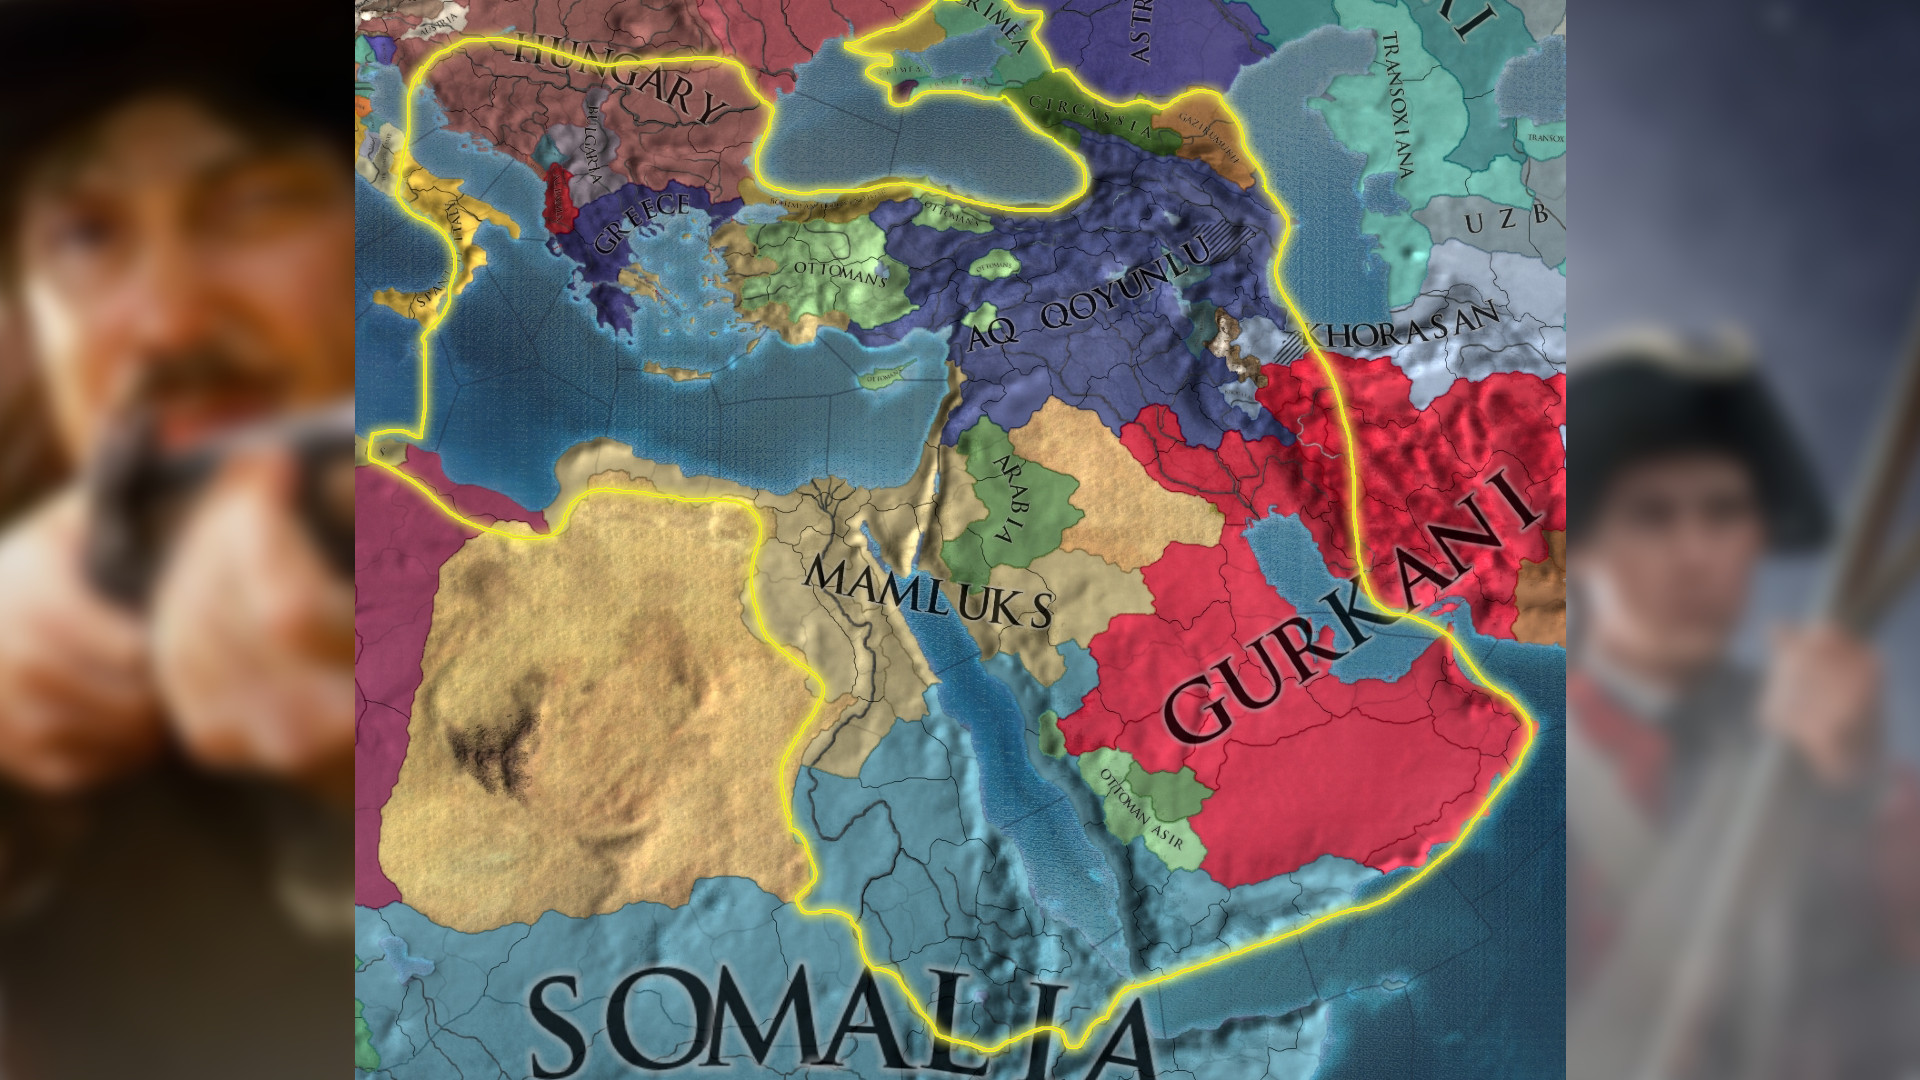 Europa Universalis 4 mod The Rise and Fall of Empires - Eskiden altın sınırlara kadar uzanan Osmanlı İmparatorluğu'nun çöküşünü gösteren bir harita.